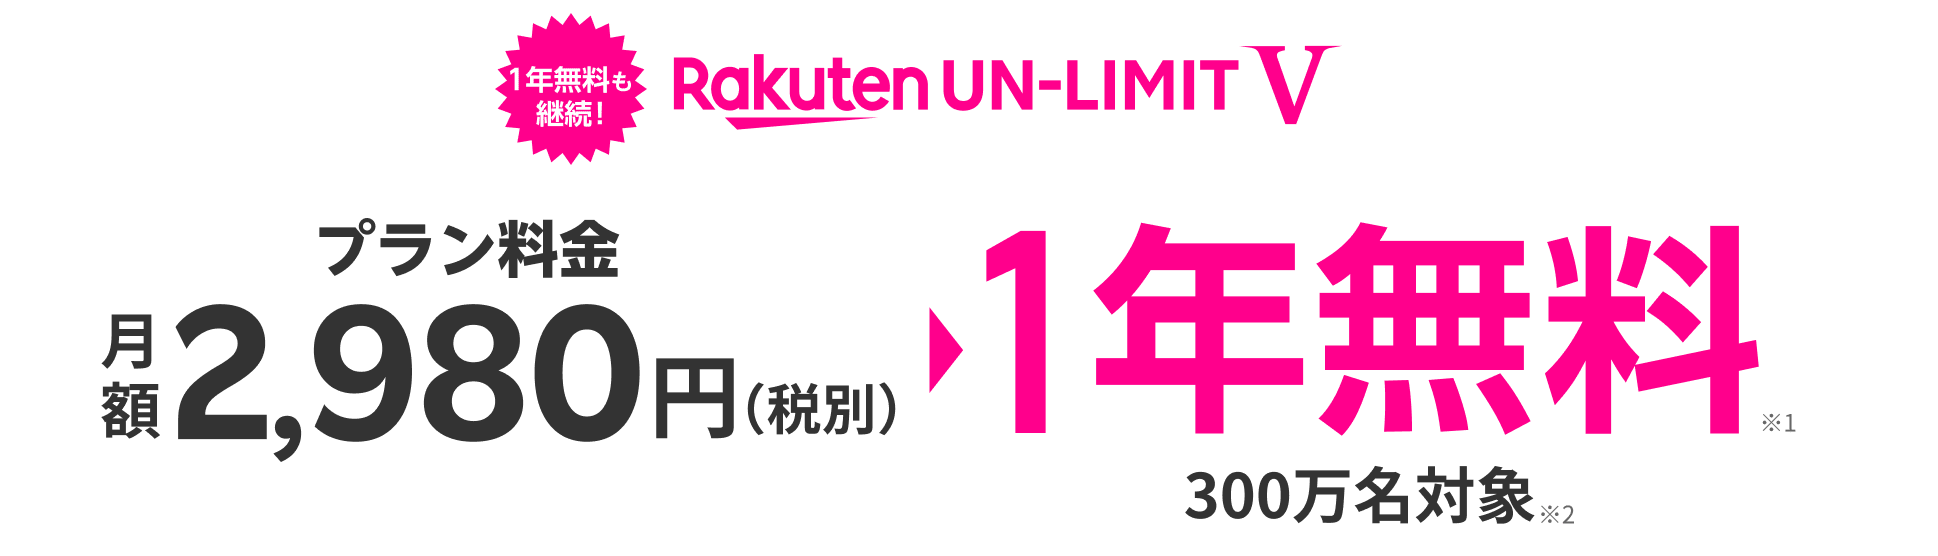 Rakuten UN-LIMIT V プラン料金 2,980円/月 （税別） 1年無料※1 300万名対象※2